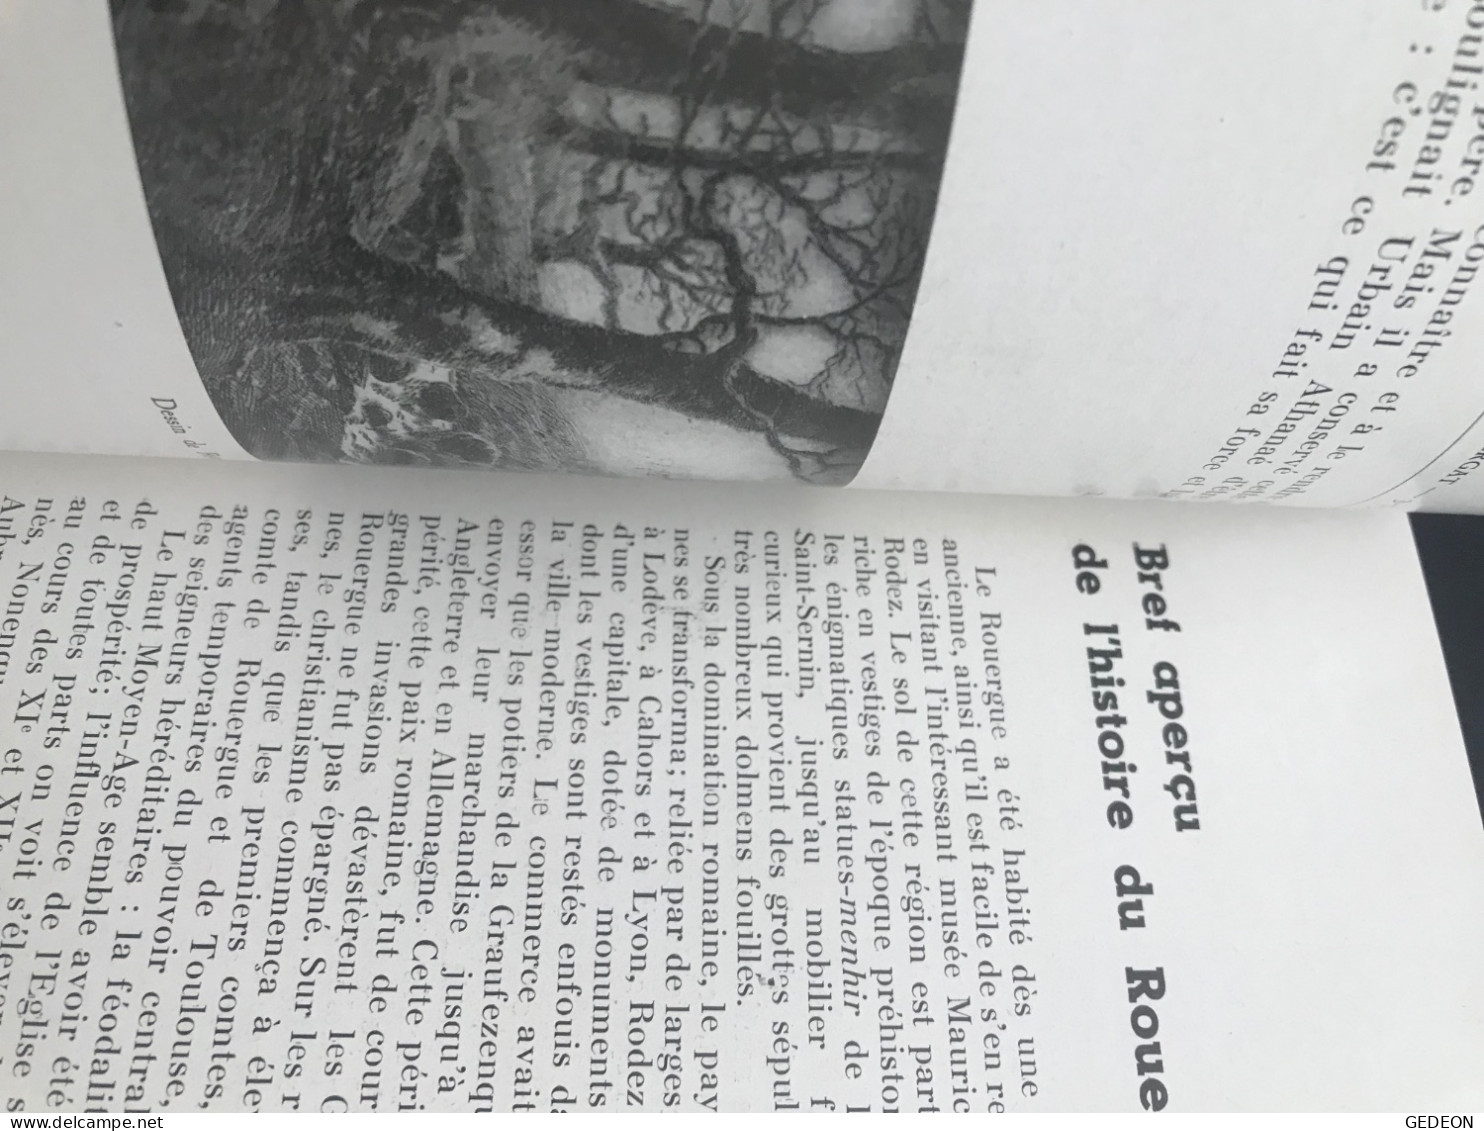 2 livres de 1938: les lampions du calvaire & petit guide officiel de la foire exposition de Rodez. 1938